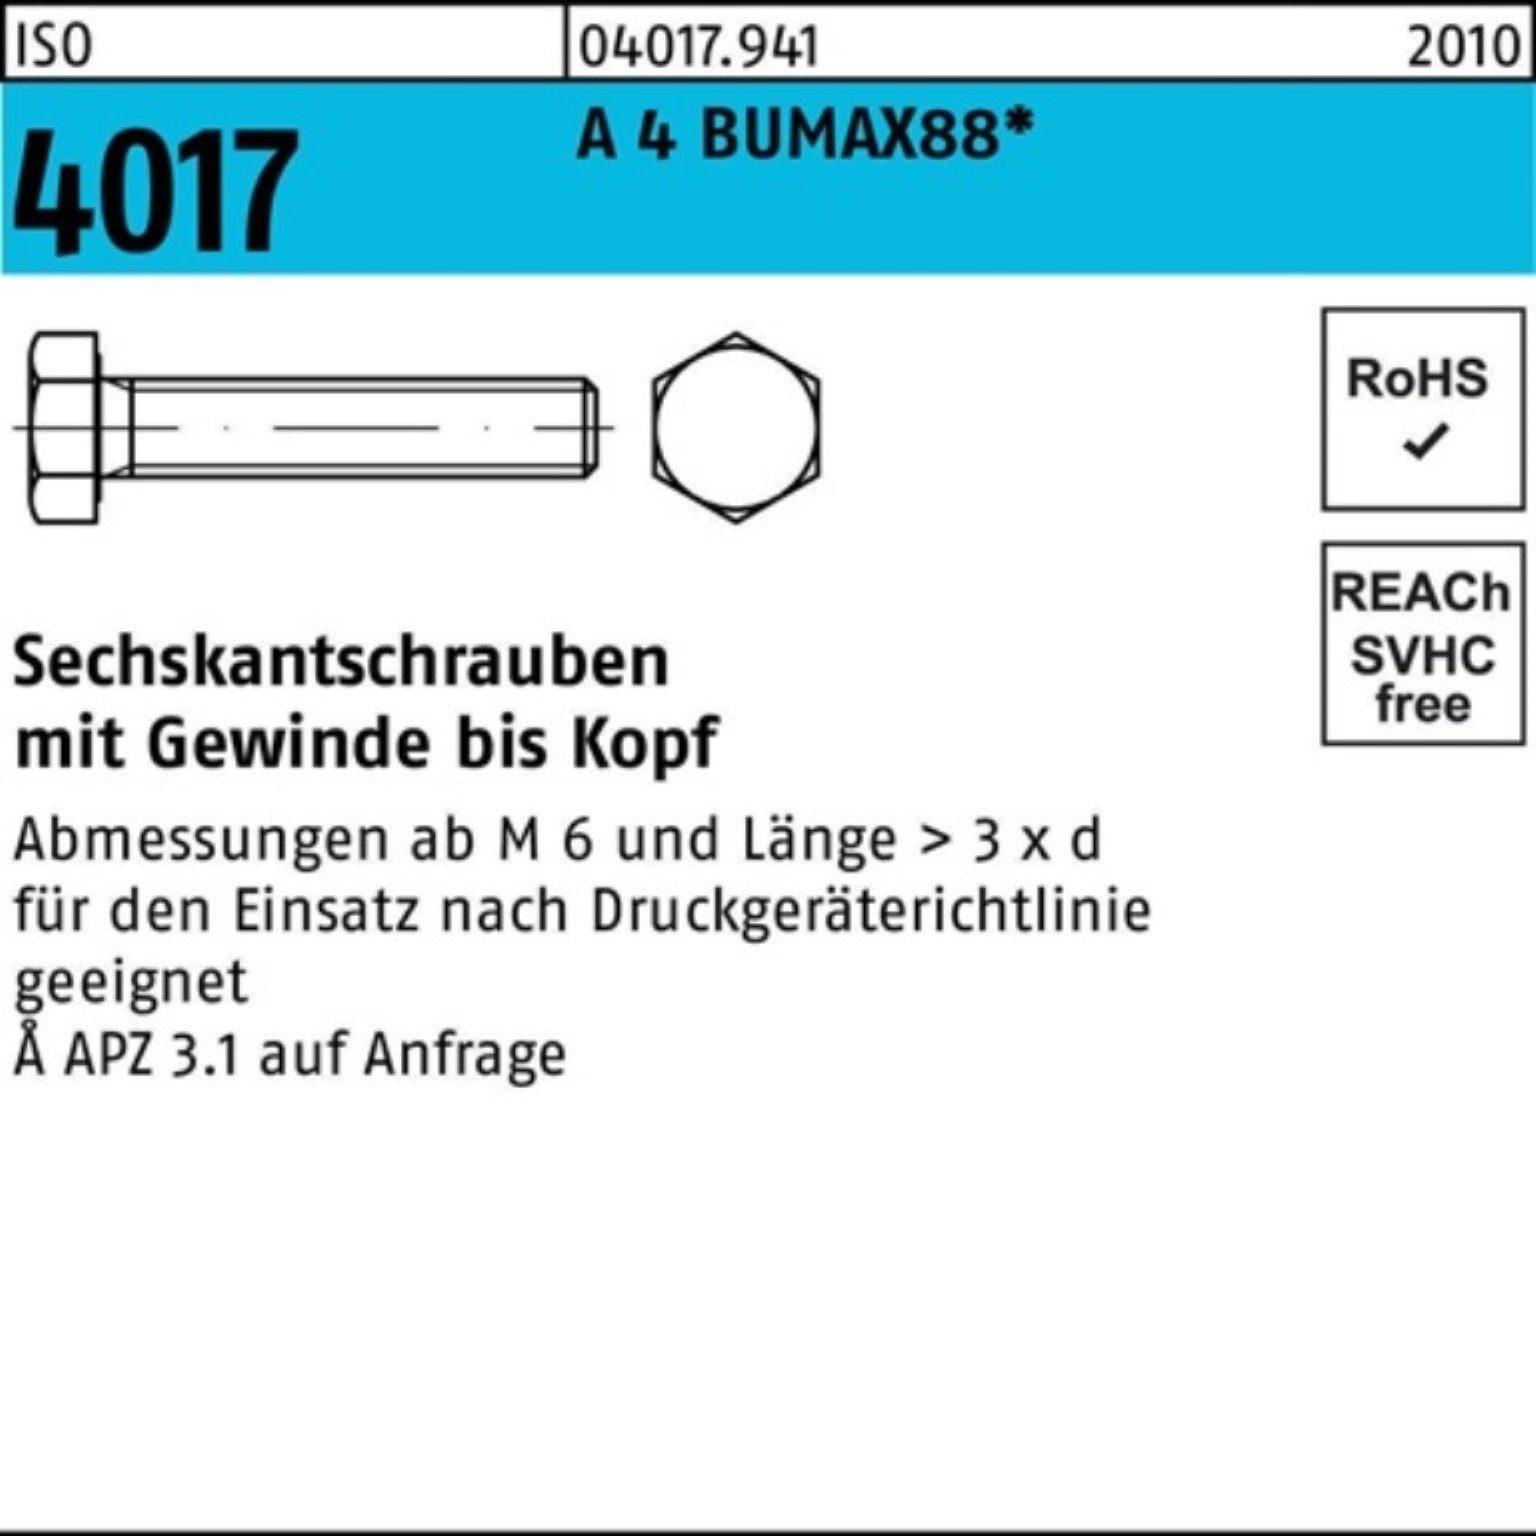 Bufab Sechskantschraube 100er Pack Sechskantschraube ISO 4017 VG M8x 30 A 4 BUMAX88 50 Stück | Schrauben